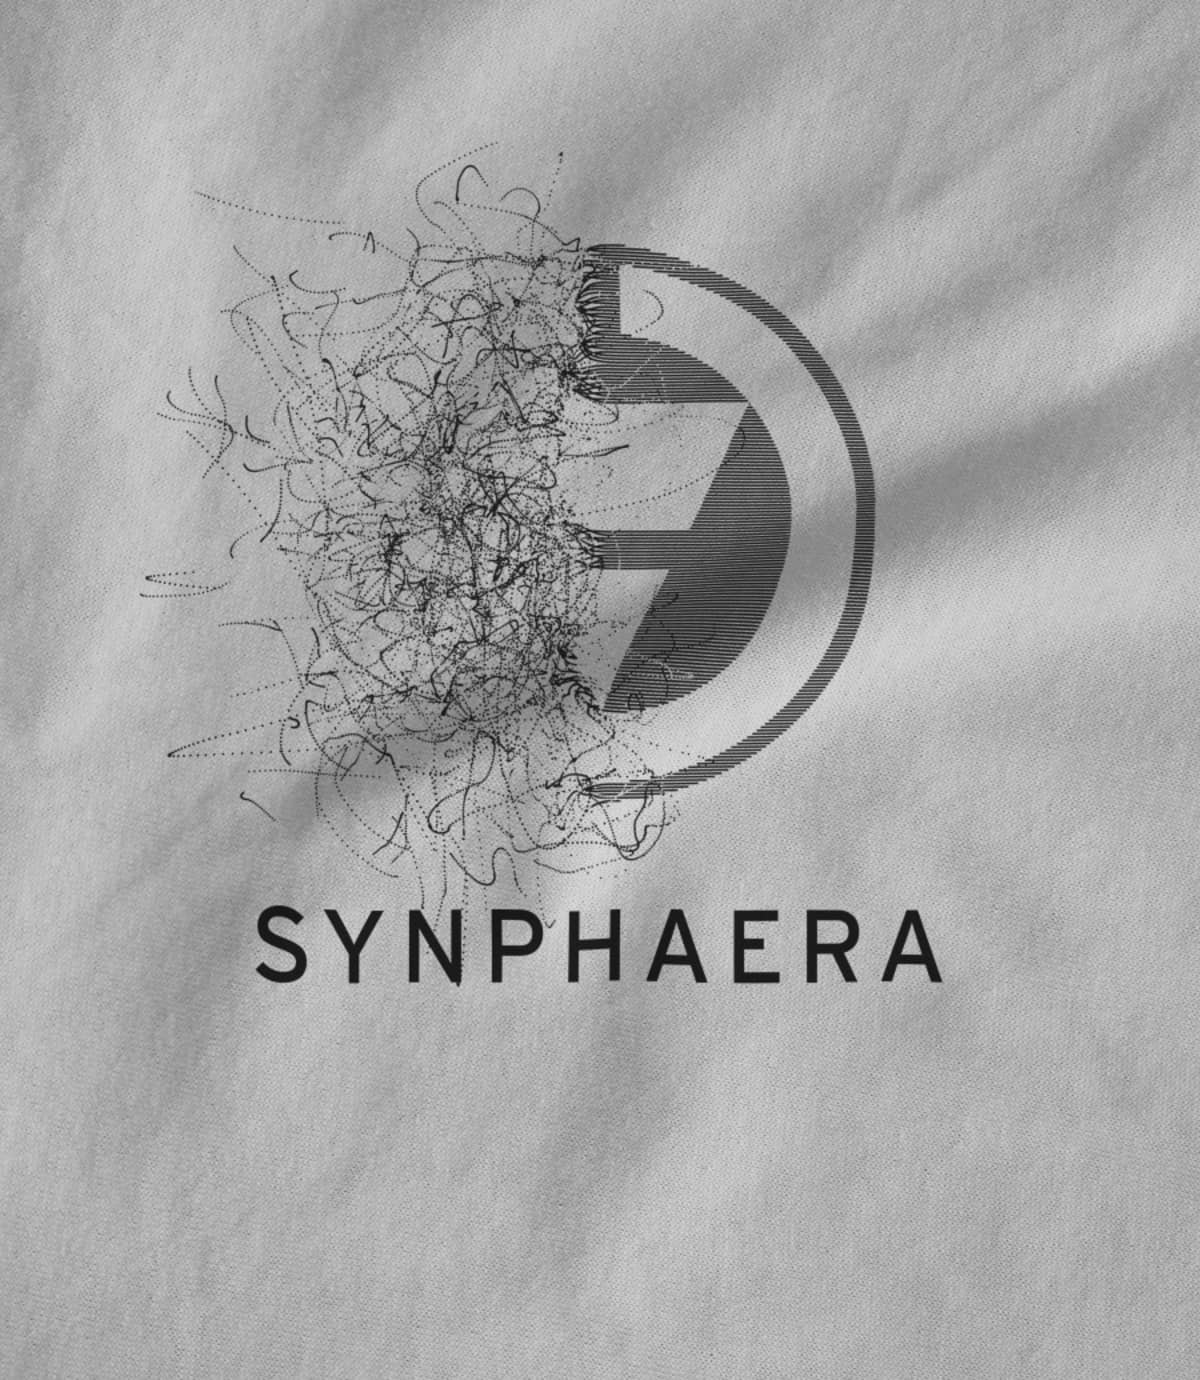 Synphaera synphaera new design 7 1521850170